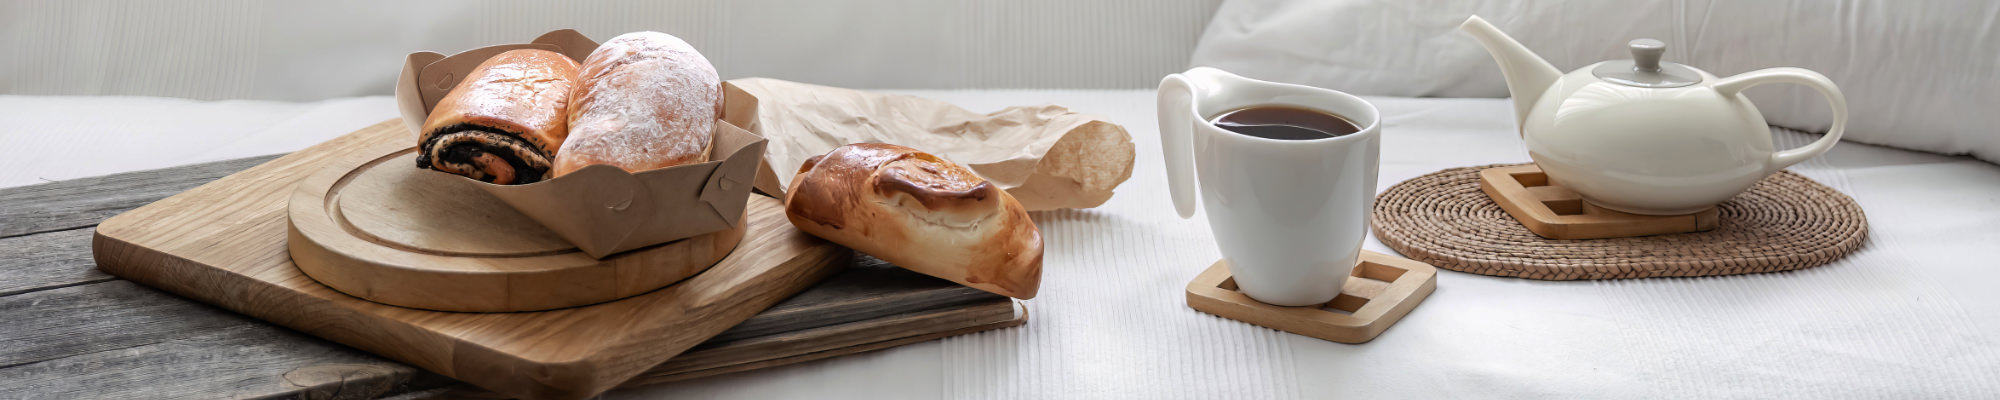 Kaffee und Sandwiches für ein leckeres Frühstück im Gästezimmer